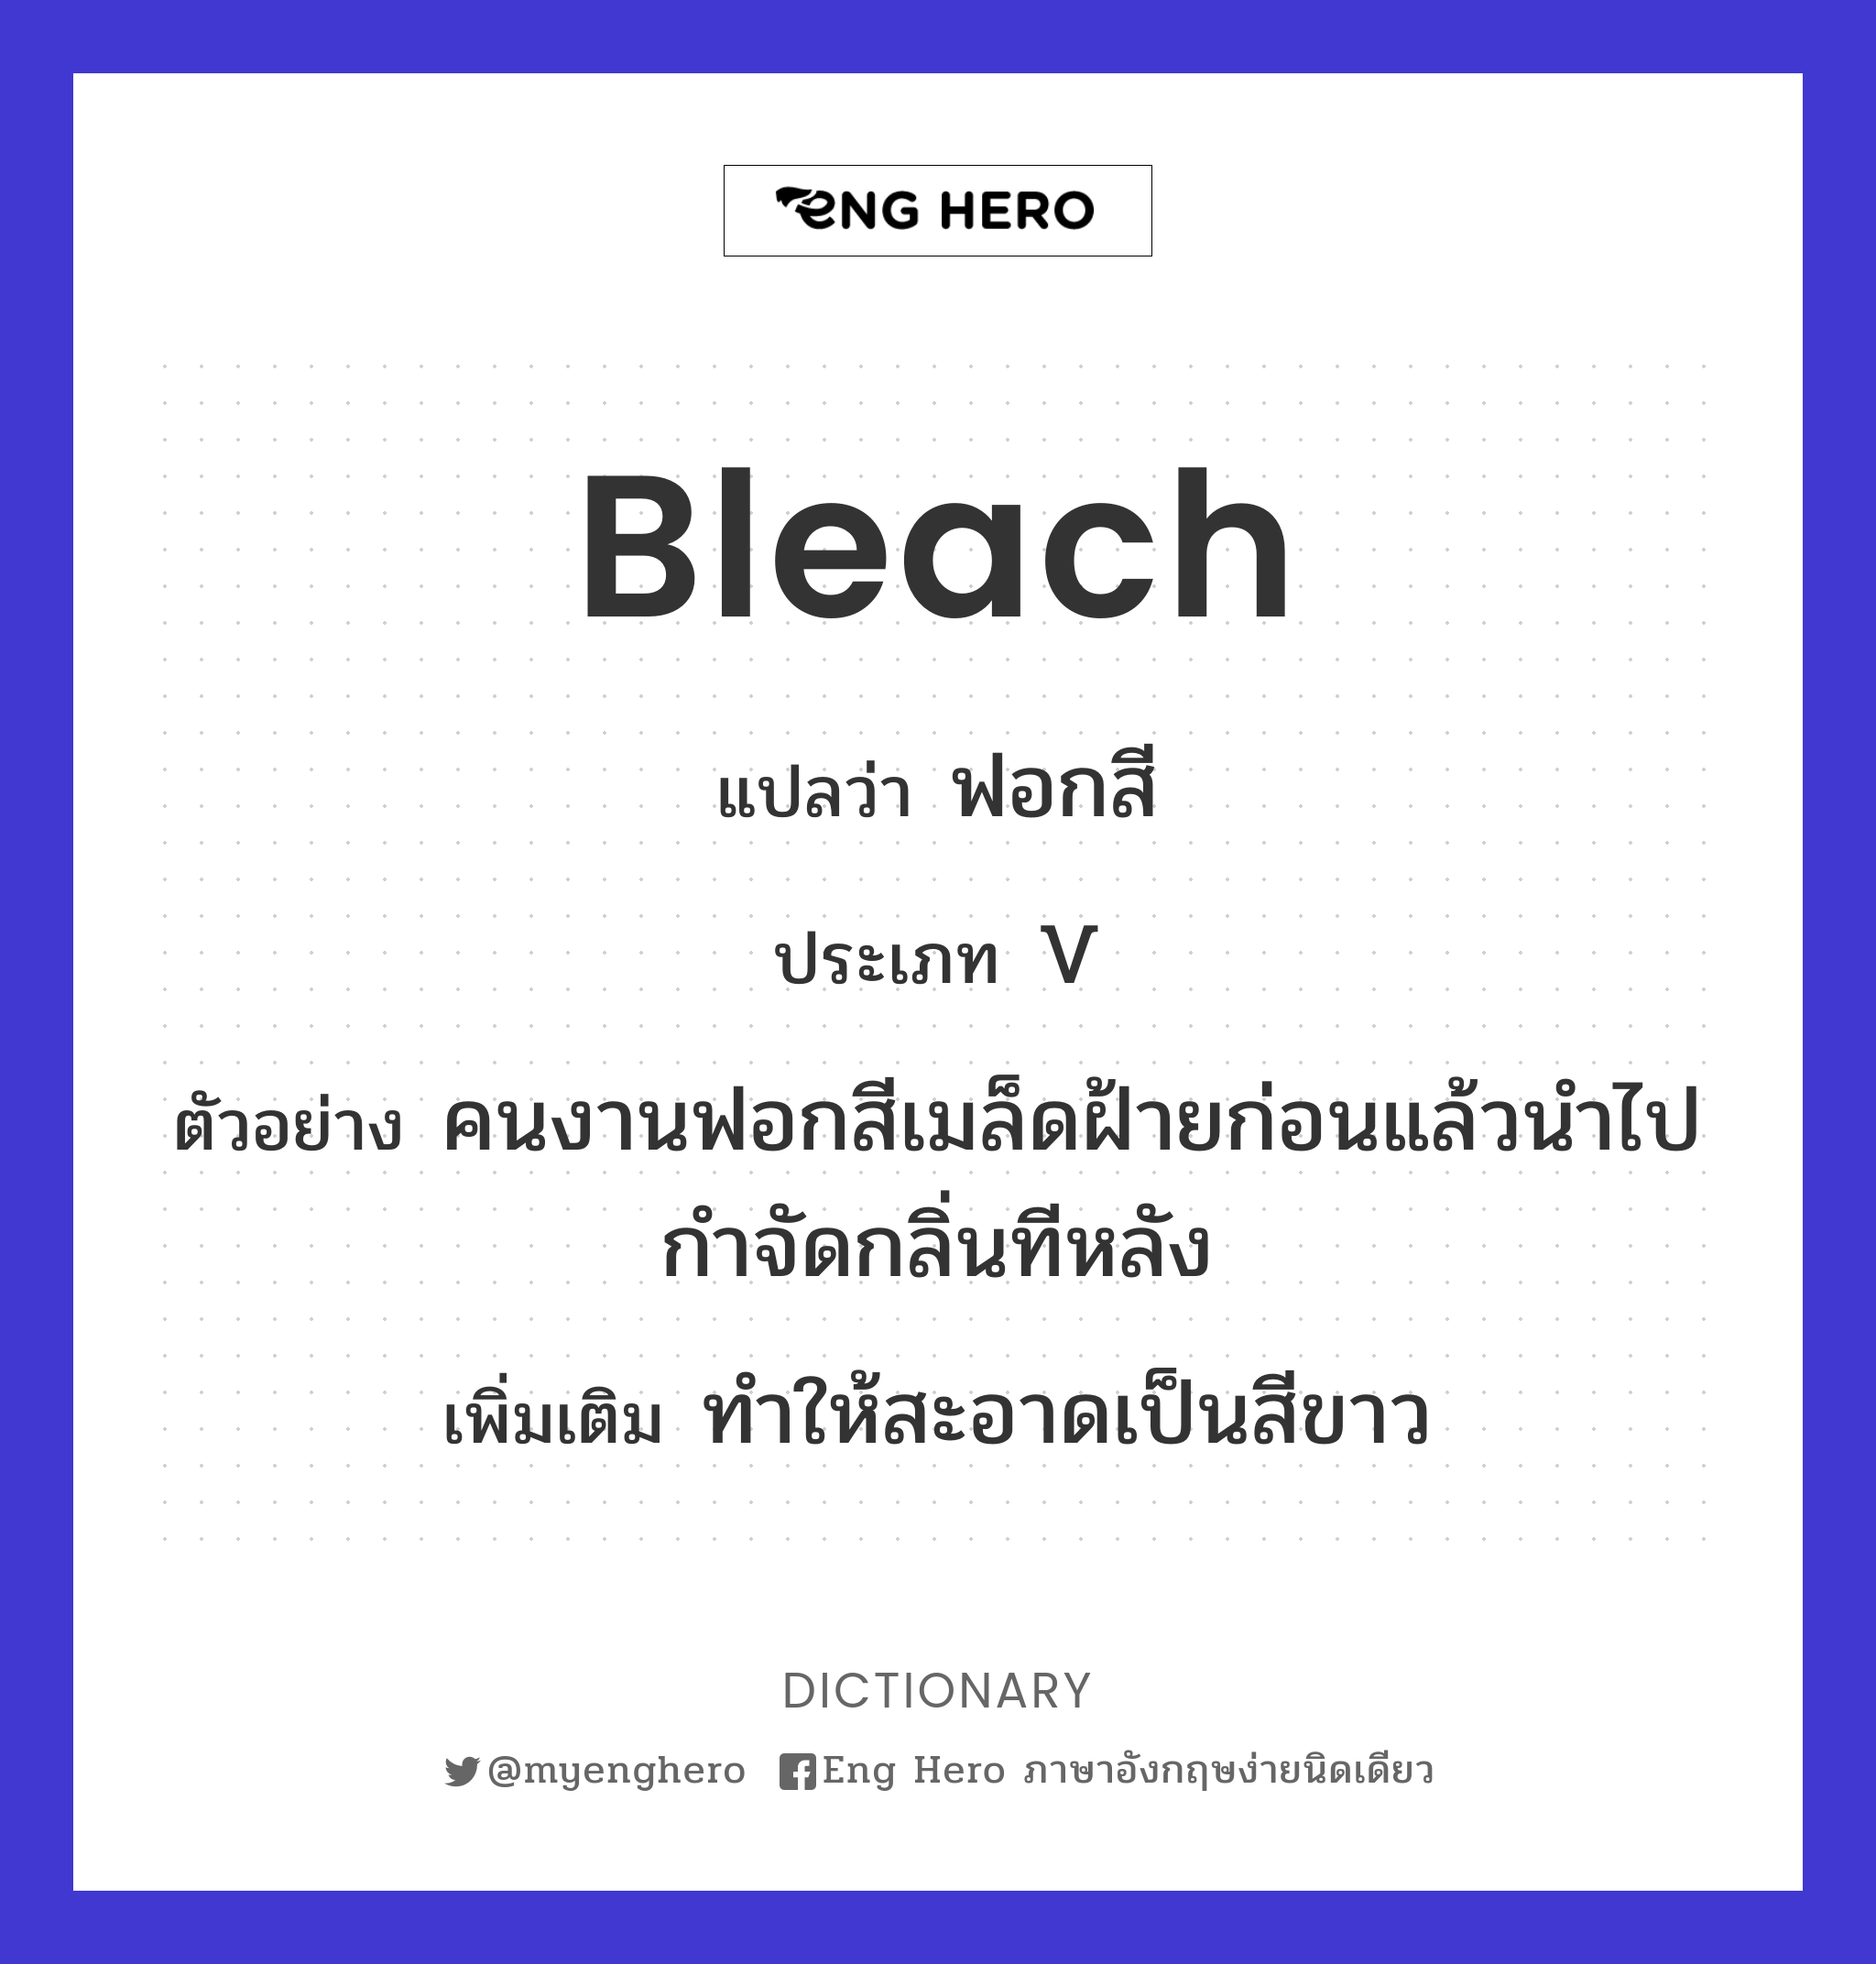 bleach